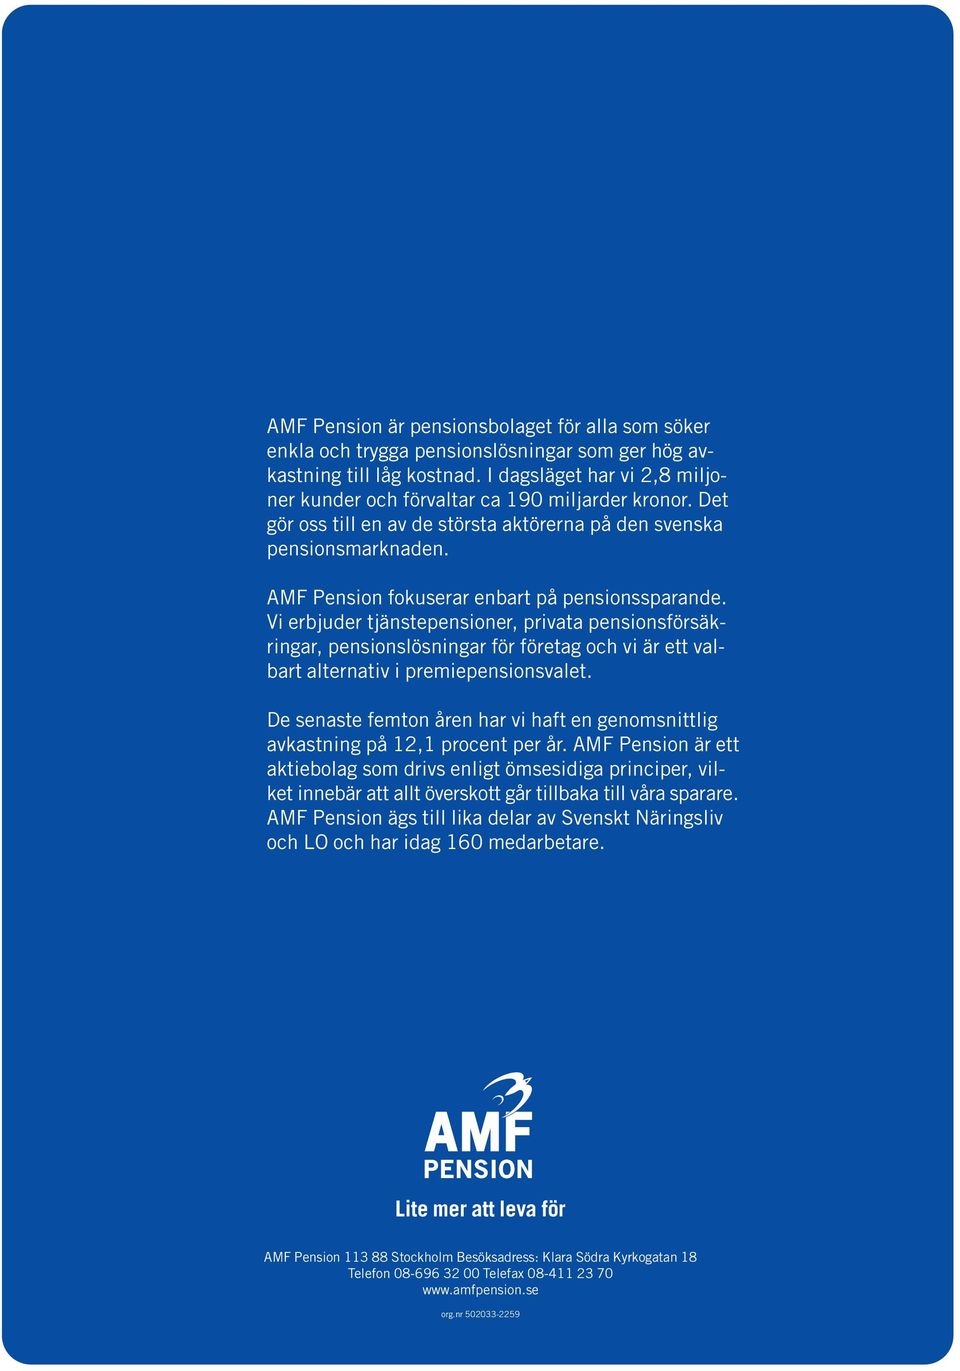 AMF Pension fokuserar enbart på pensionssparande. Vi erbjuder tjänstepensioner, privata pensionsförsäkringar, pensionslösningar för företag och vi är ett valbart alternativ i premiepensionsvalet.